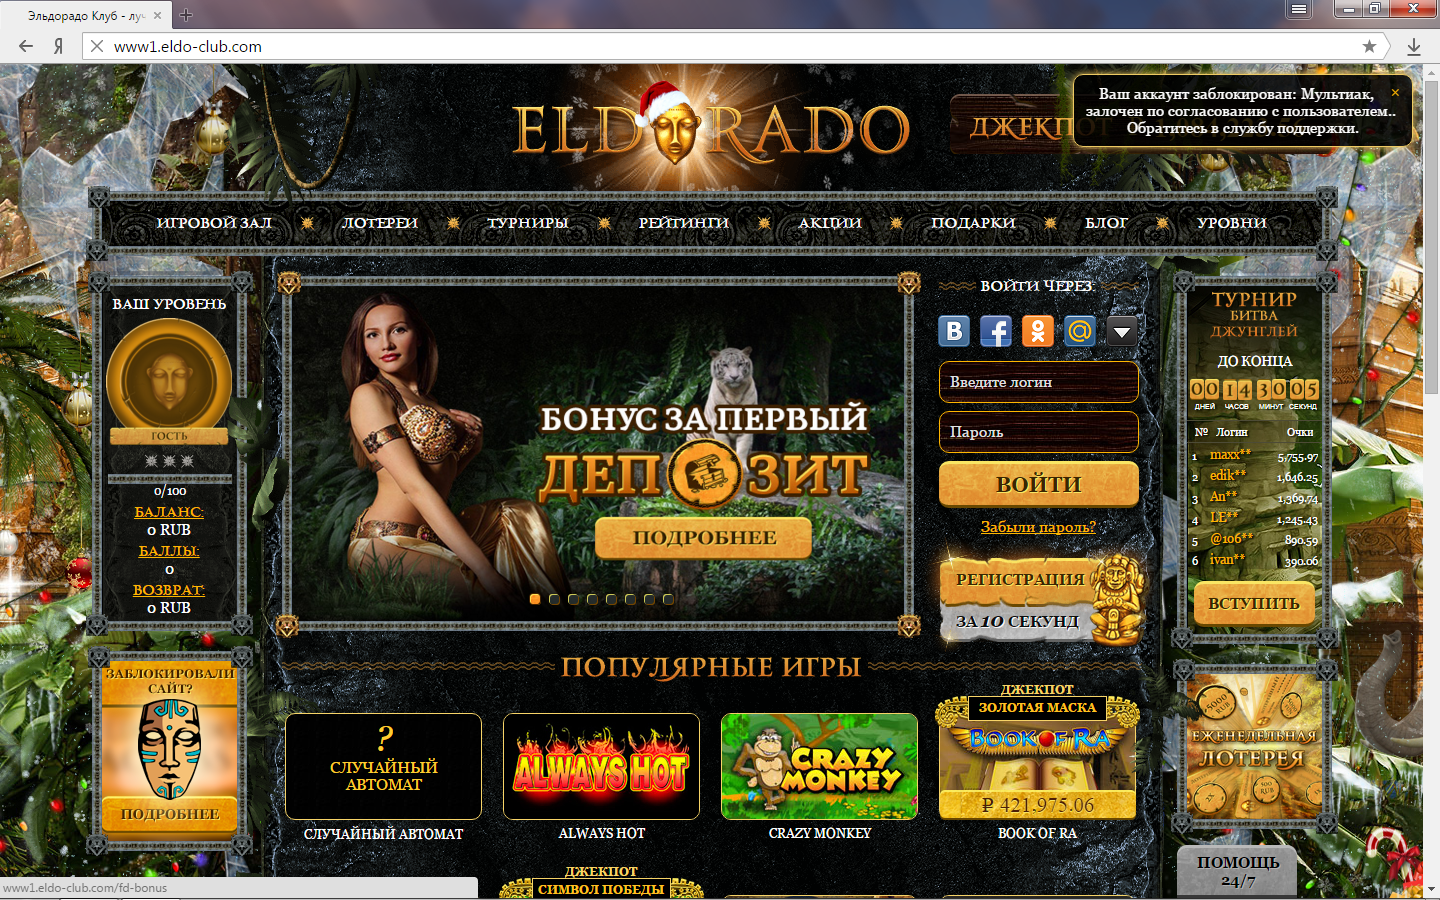 Казино eldorado официальный сайт showthread php фильм короли рулетки смотреть онлайн бесплатно